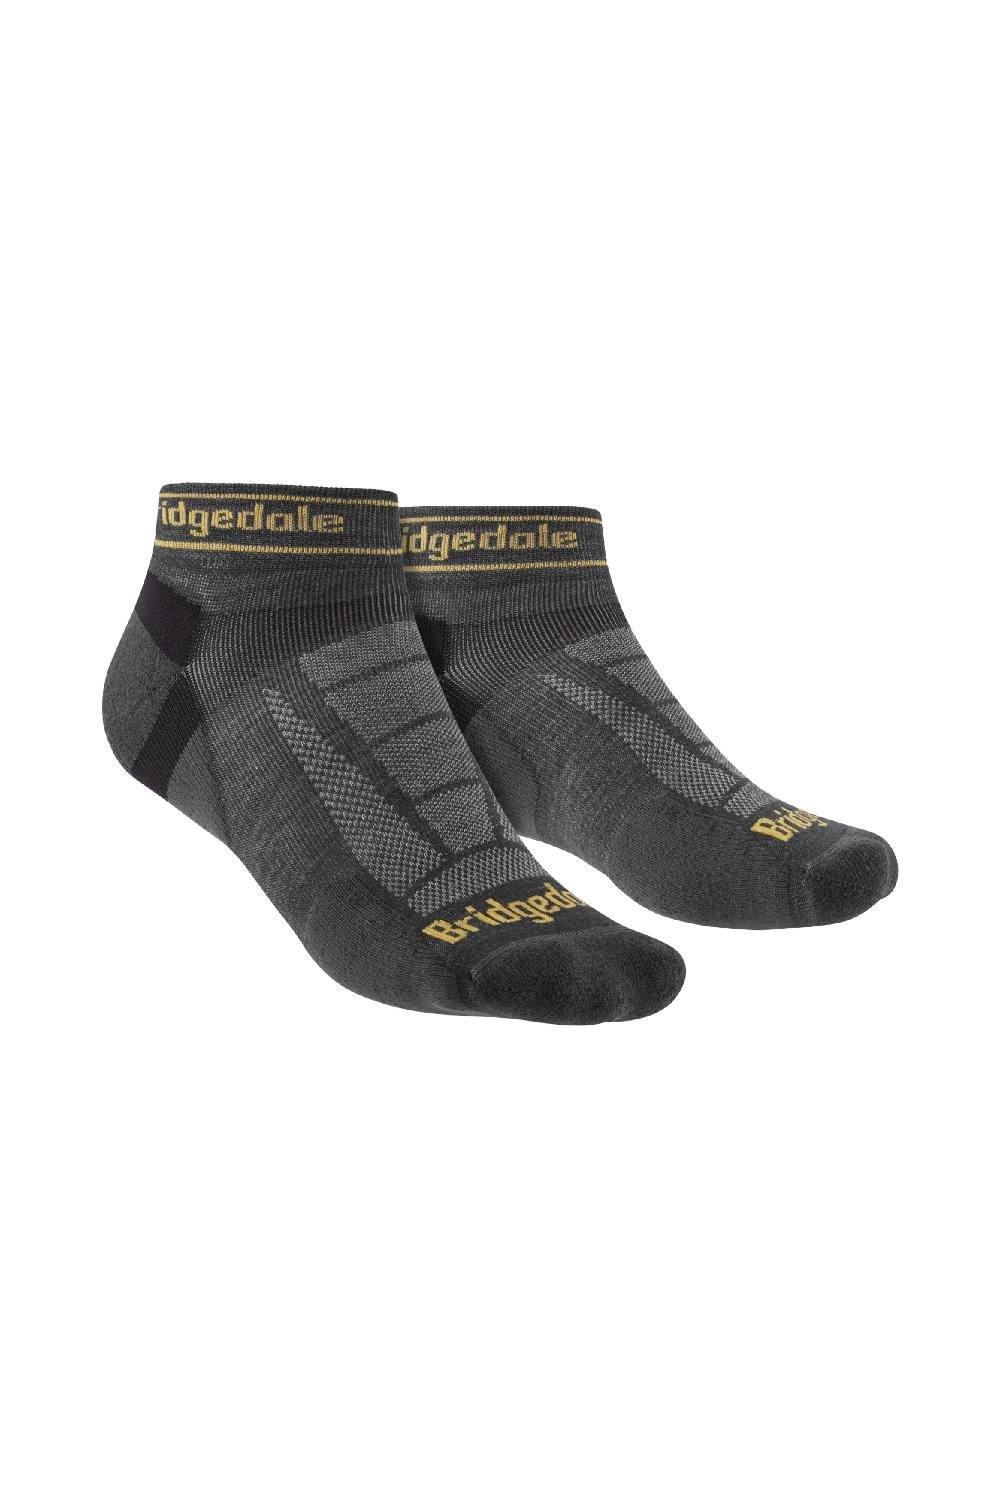 Trail Running Ultralight T2 Merino Wool Sport Low Socks